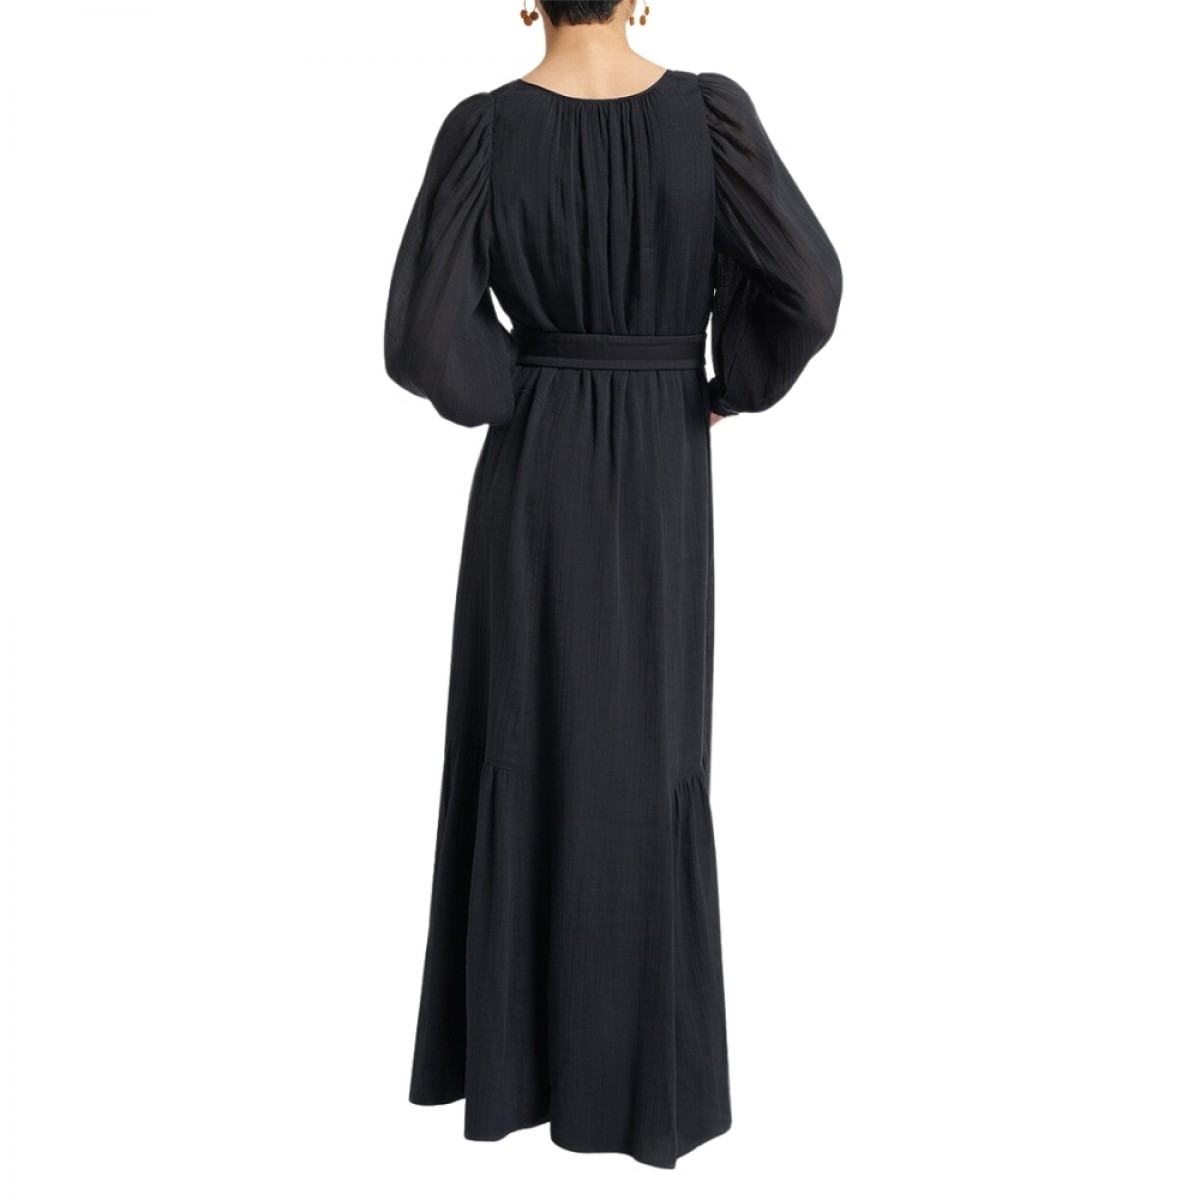 arabelle dress - black - ryg